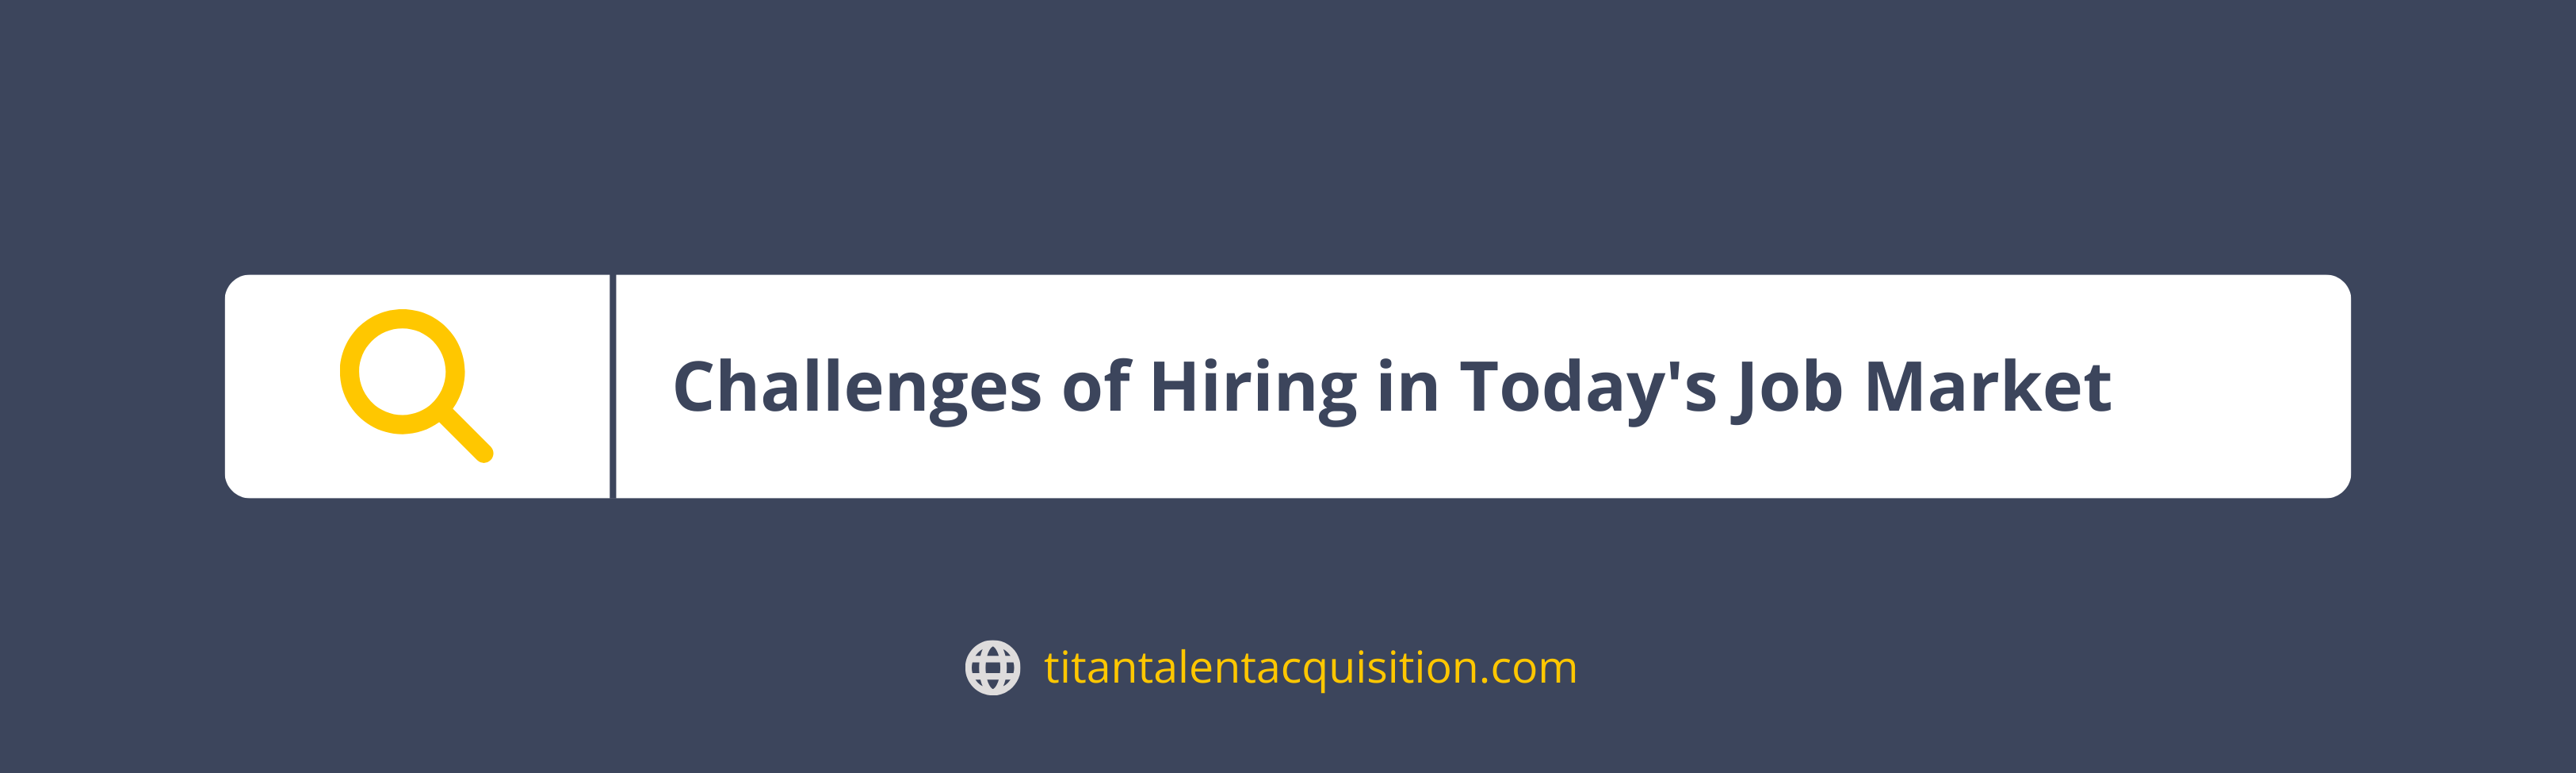 Challenges of hiring in Today's Job Market